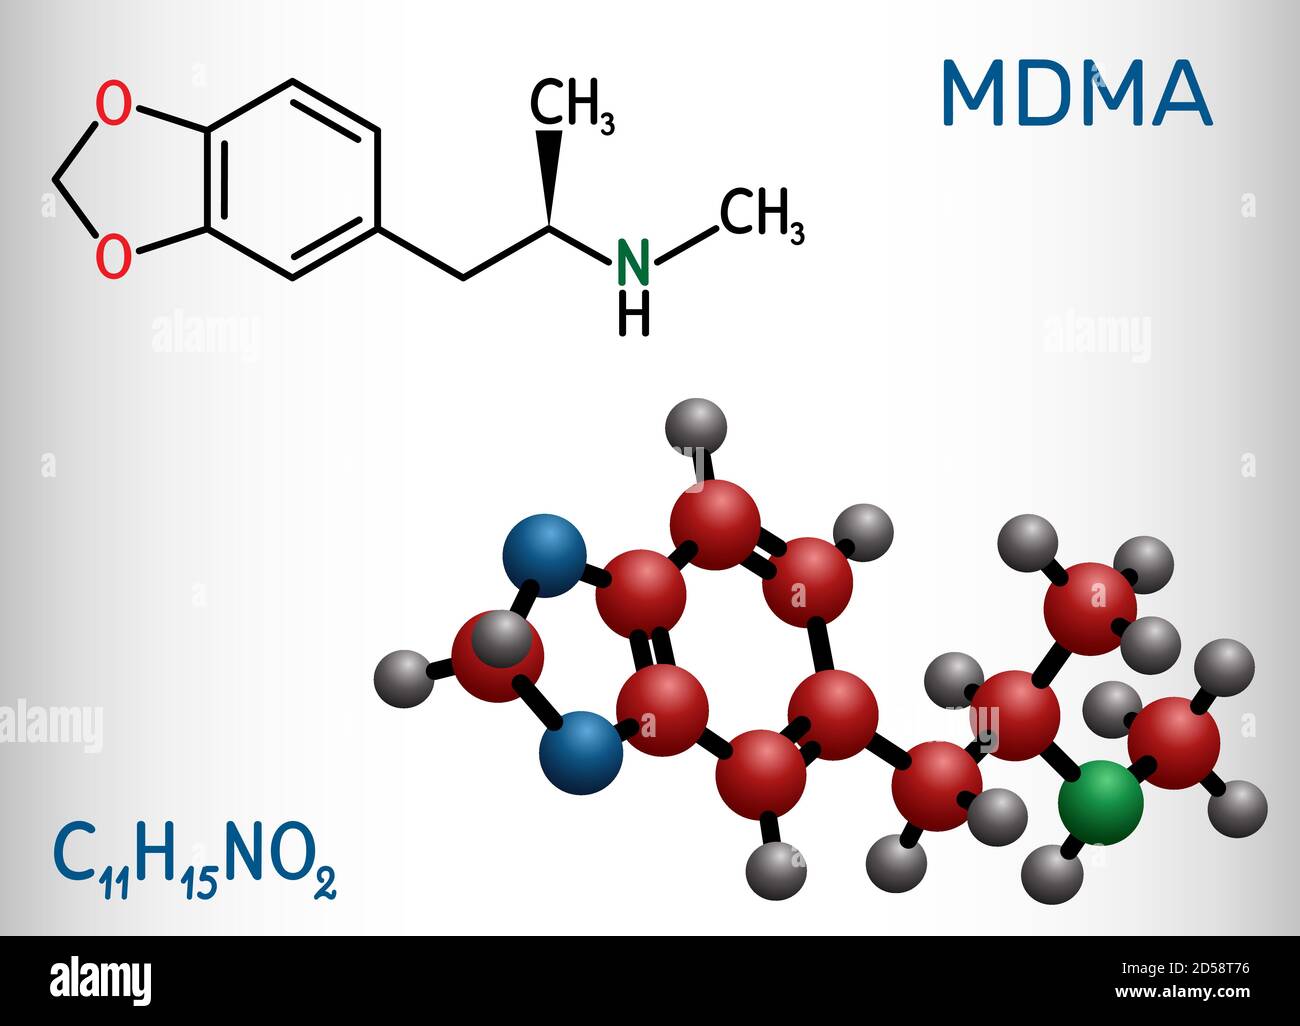 3,4-Methylendioxymethamphetamin, MDMA, XTC, Ecstasy-Molekül. Es ist psychoaktive, halluzinogene Droge. Strukturelle chemische Formel und Molekülmodell. Stock Vektor